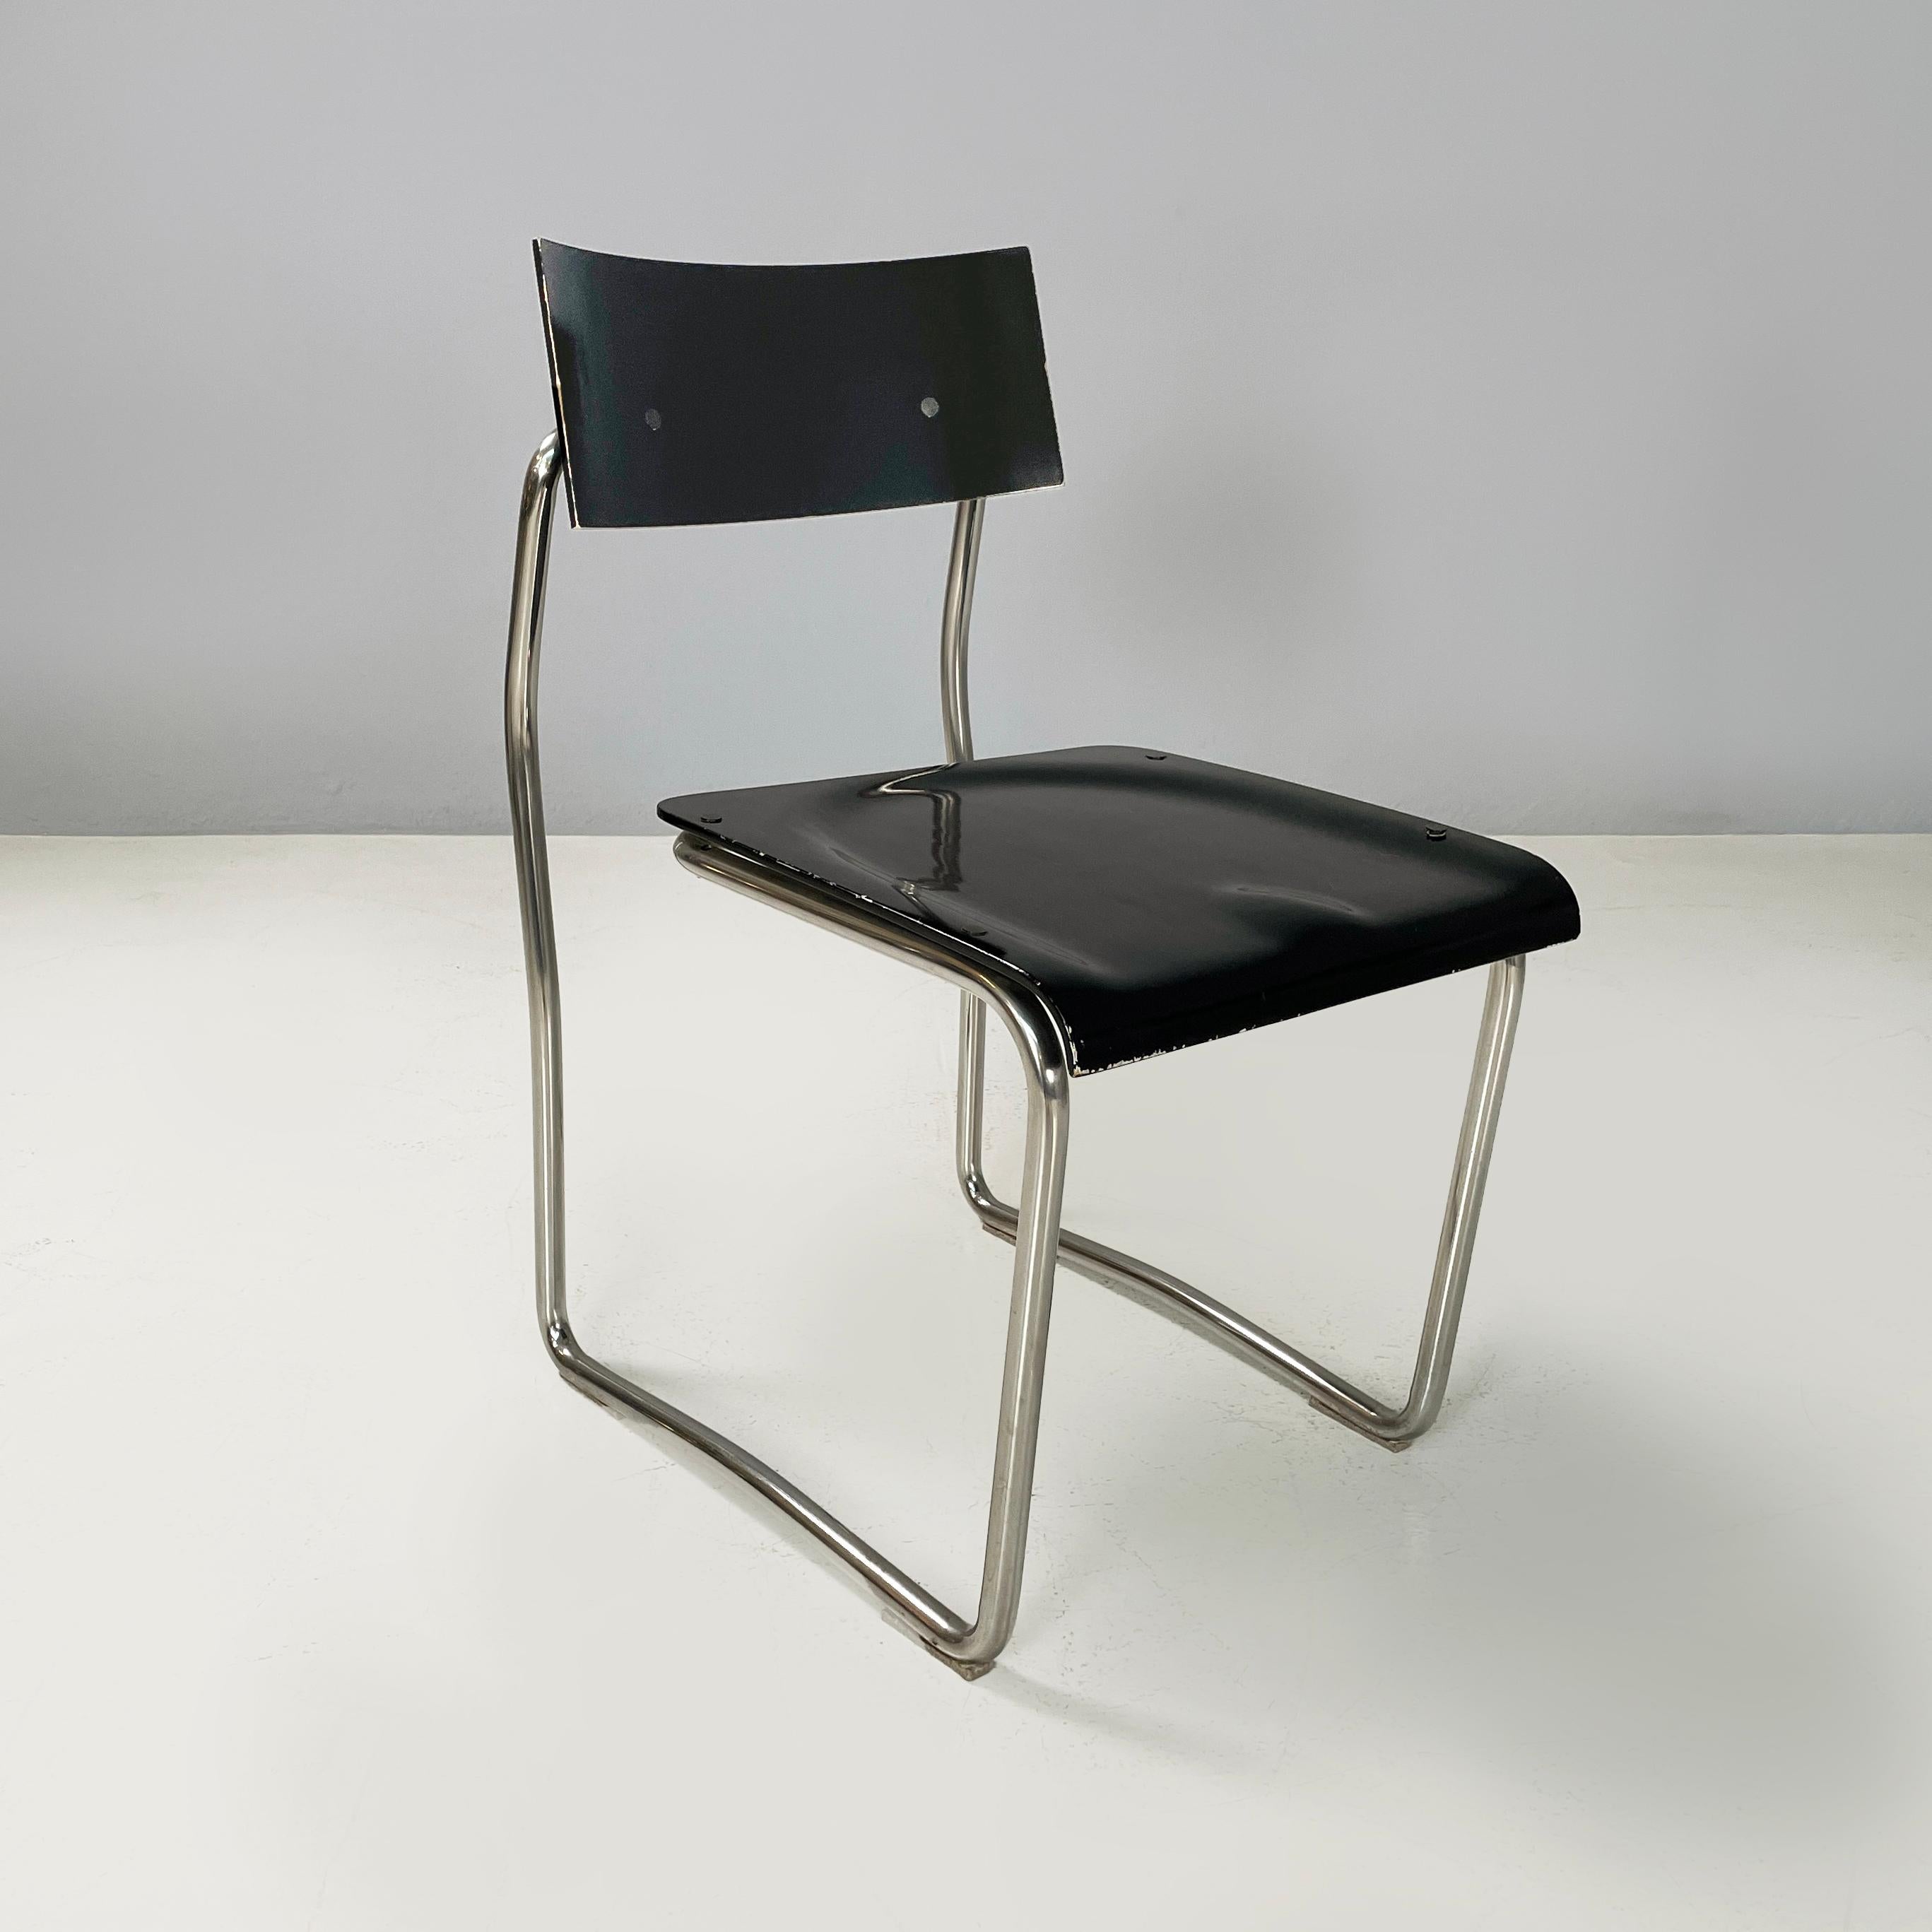 Italienische Moderne Schwarzer Stuhl und Metall Stühle Lariana von Giuseppe Terragni für Zanotta, 1980er
4 Stühle Mod. Lariana mit gebogener rechteckiger Rückenlehne und geformtem Sitz aus schwarz lackiertem Holz. Die Struktur besteht aus einem